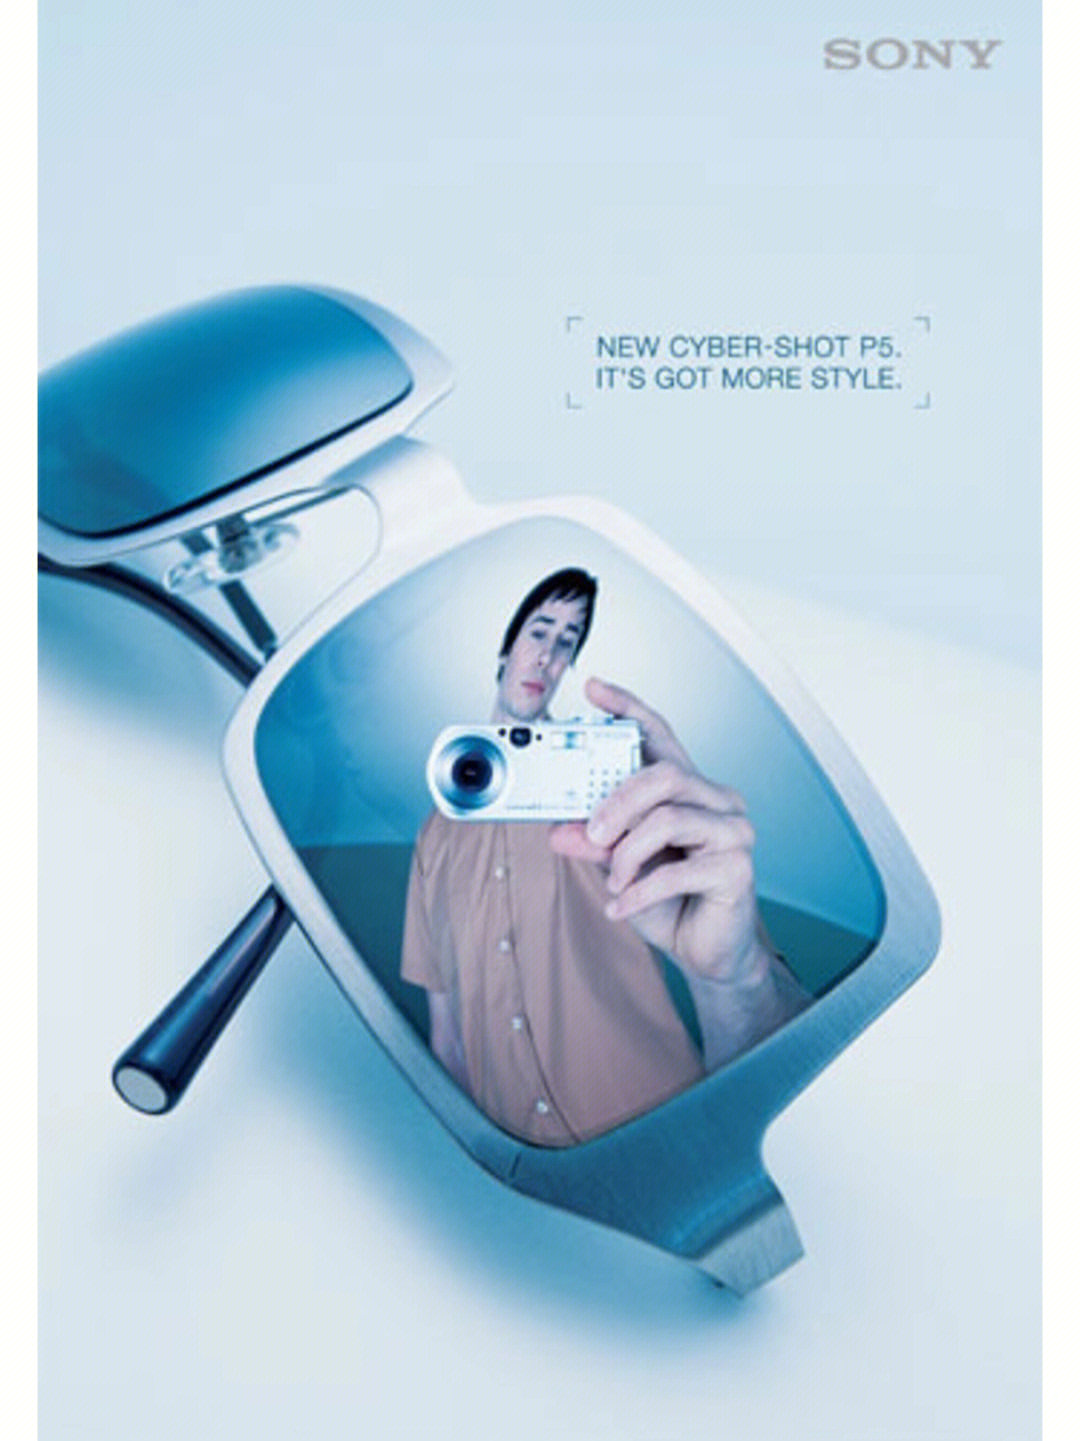 自拍馆创意广告宣传图片